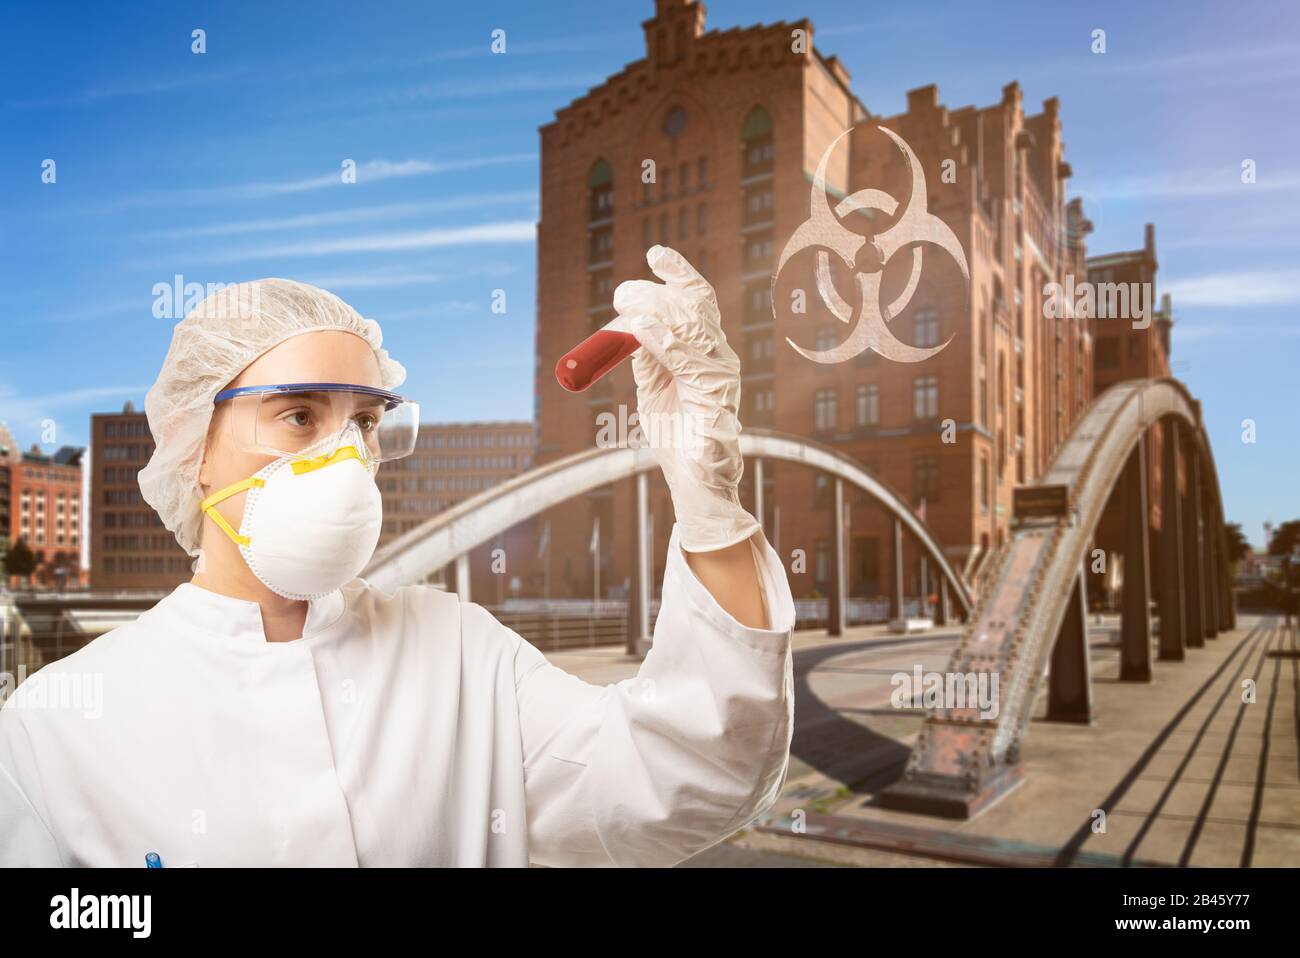 concepto abaout un biólogo examina un riesgo biológico de un tubo de ensayo por virus en una ciudad Foto de stock